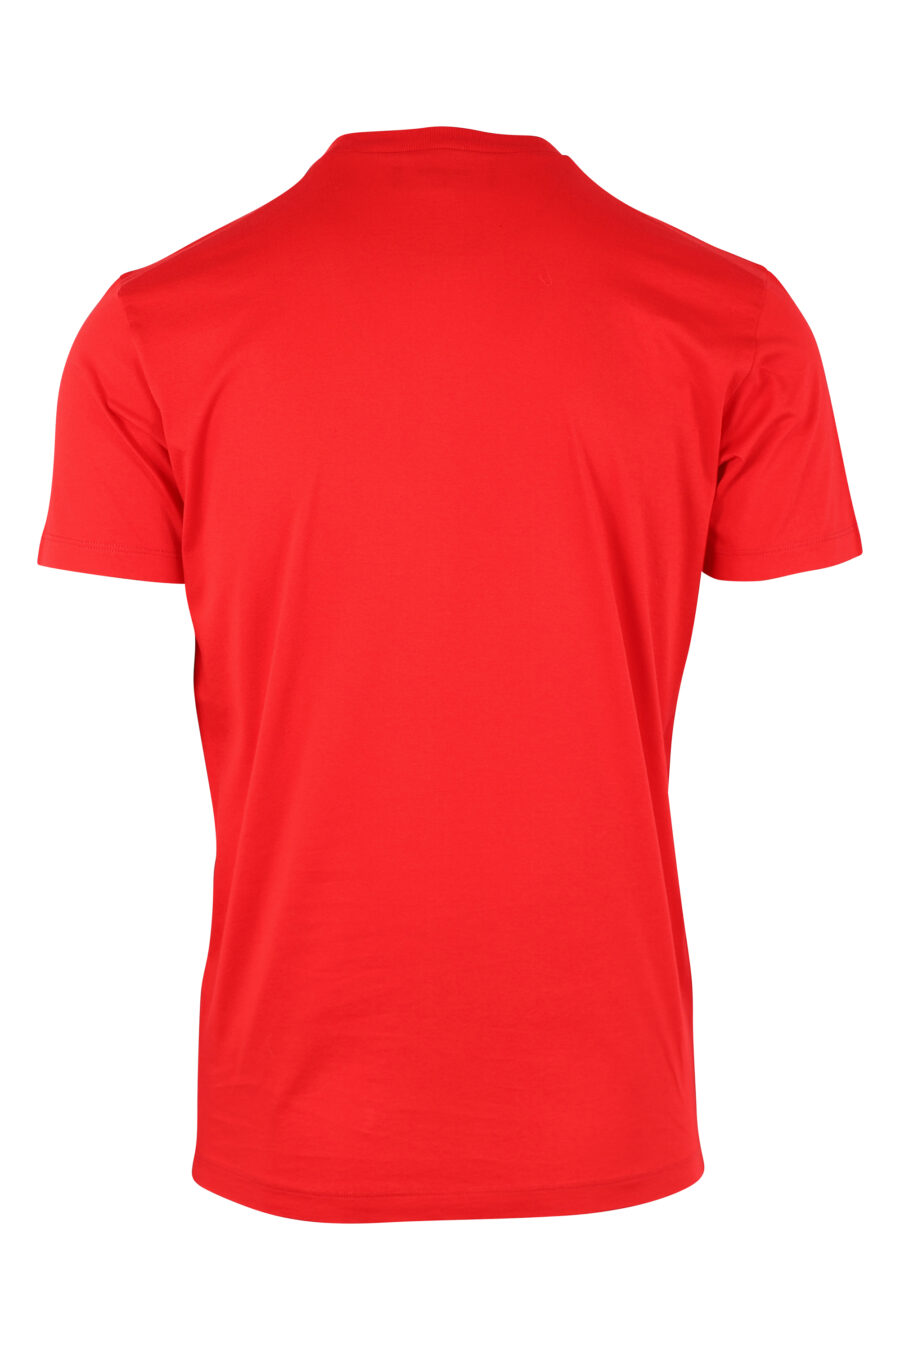 T-shirt vermelha com maxilogo "ceresio 9" - IMG 9751